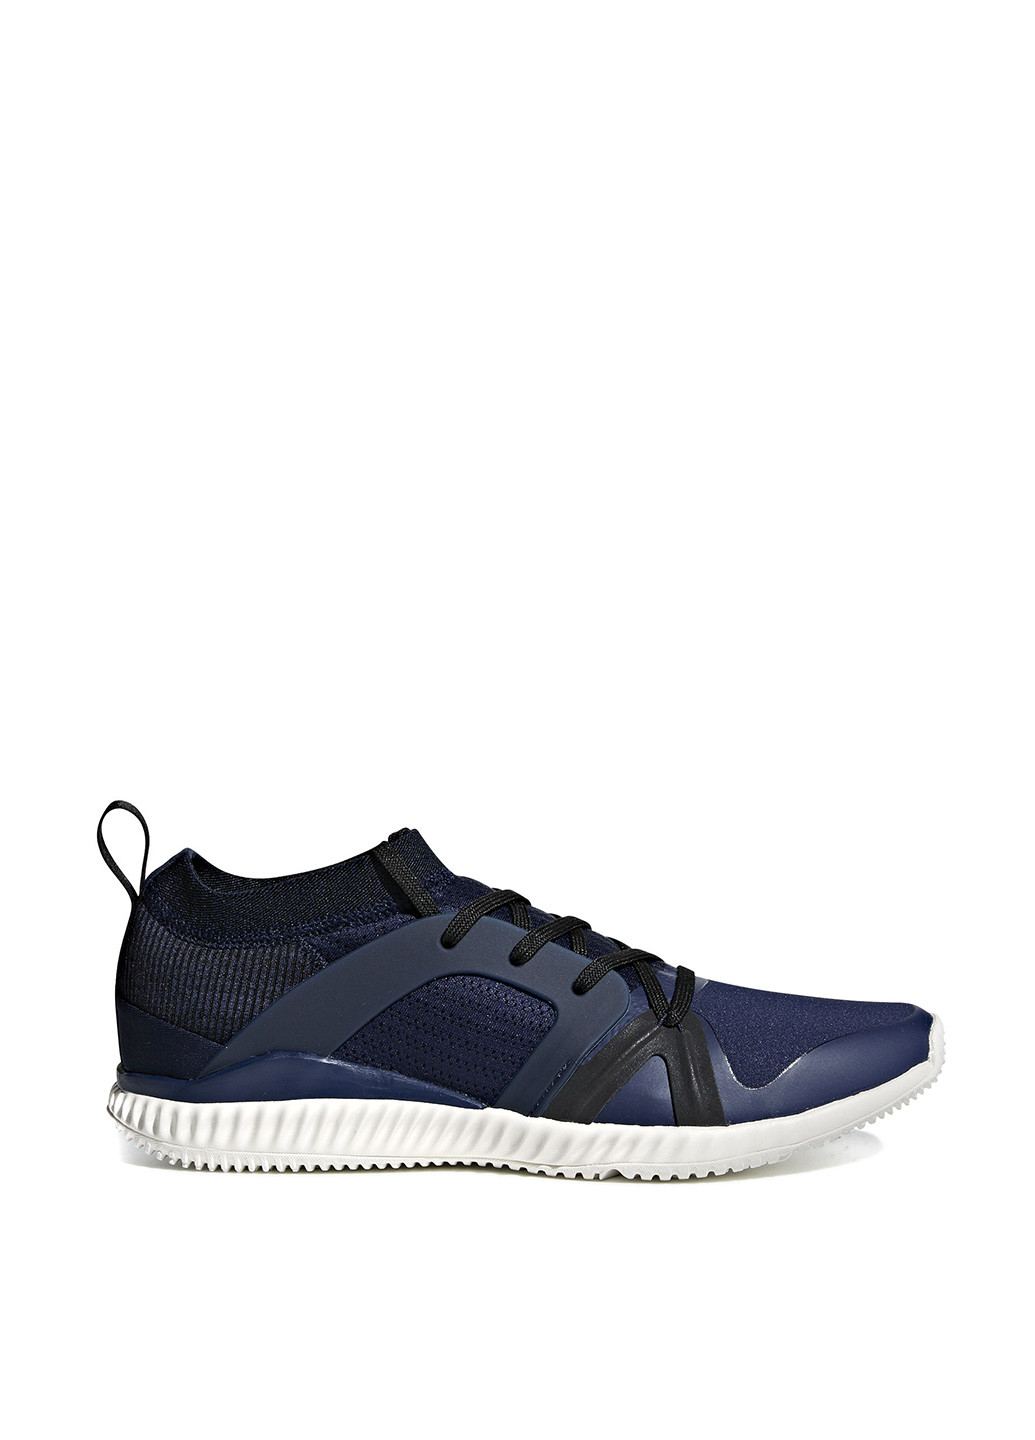 Темно-синие демисезонные кроссовки adidas Stella McCartney CrazyTrain Pro